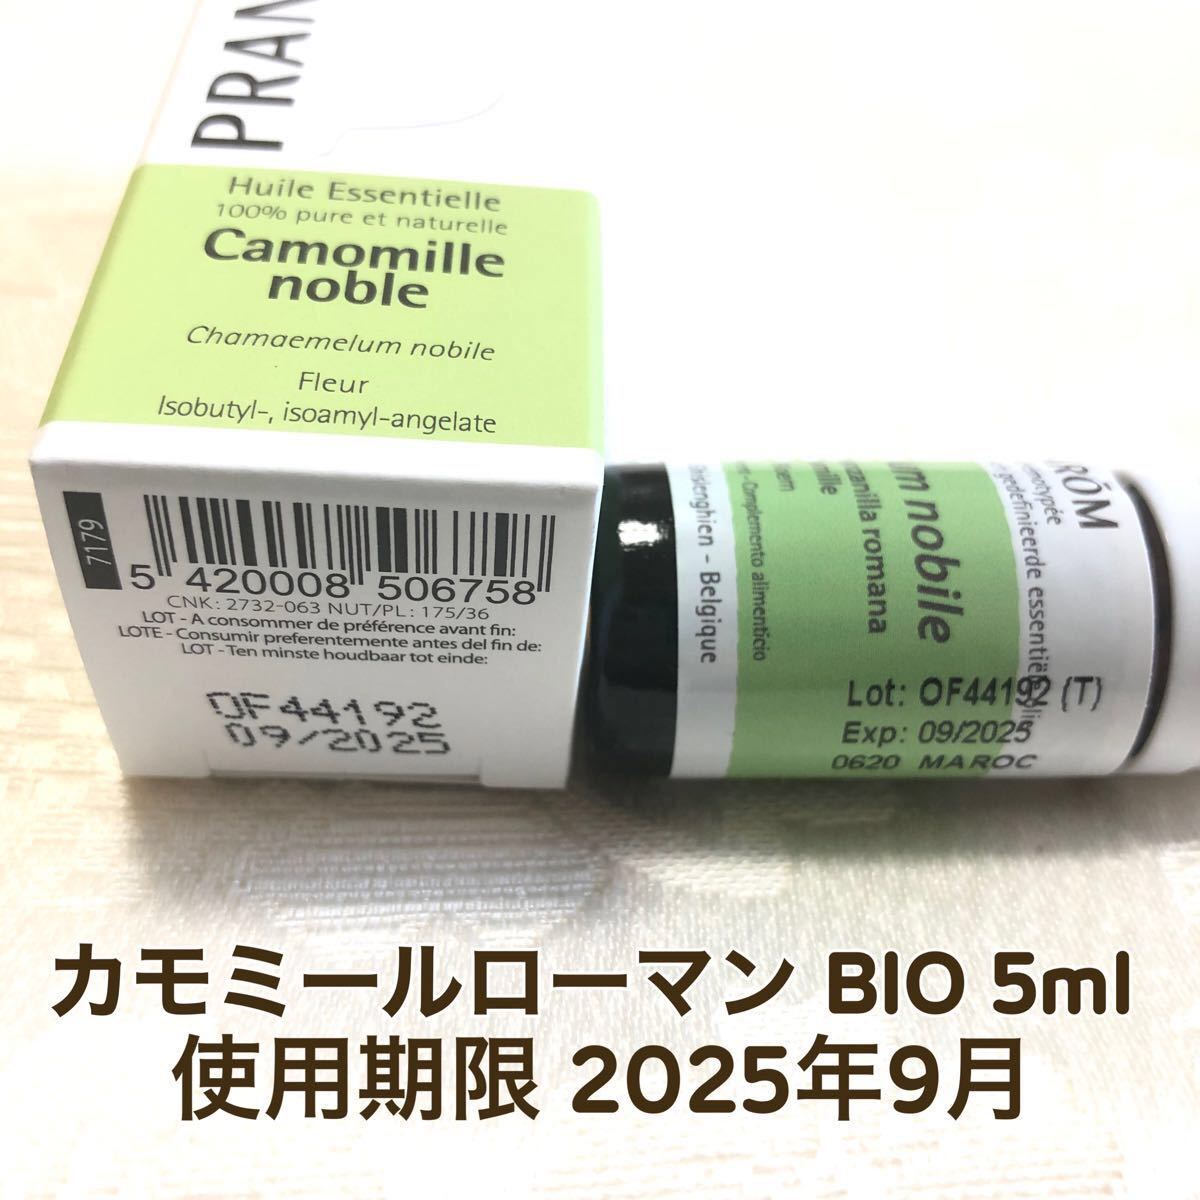 【カモミールローマン BIO 】5ml プラナロム 精油